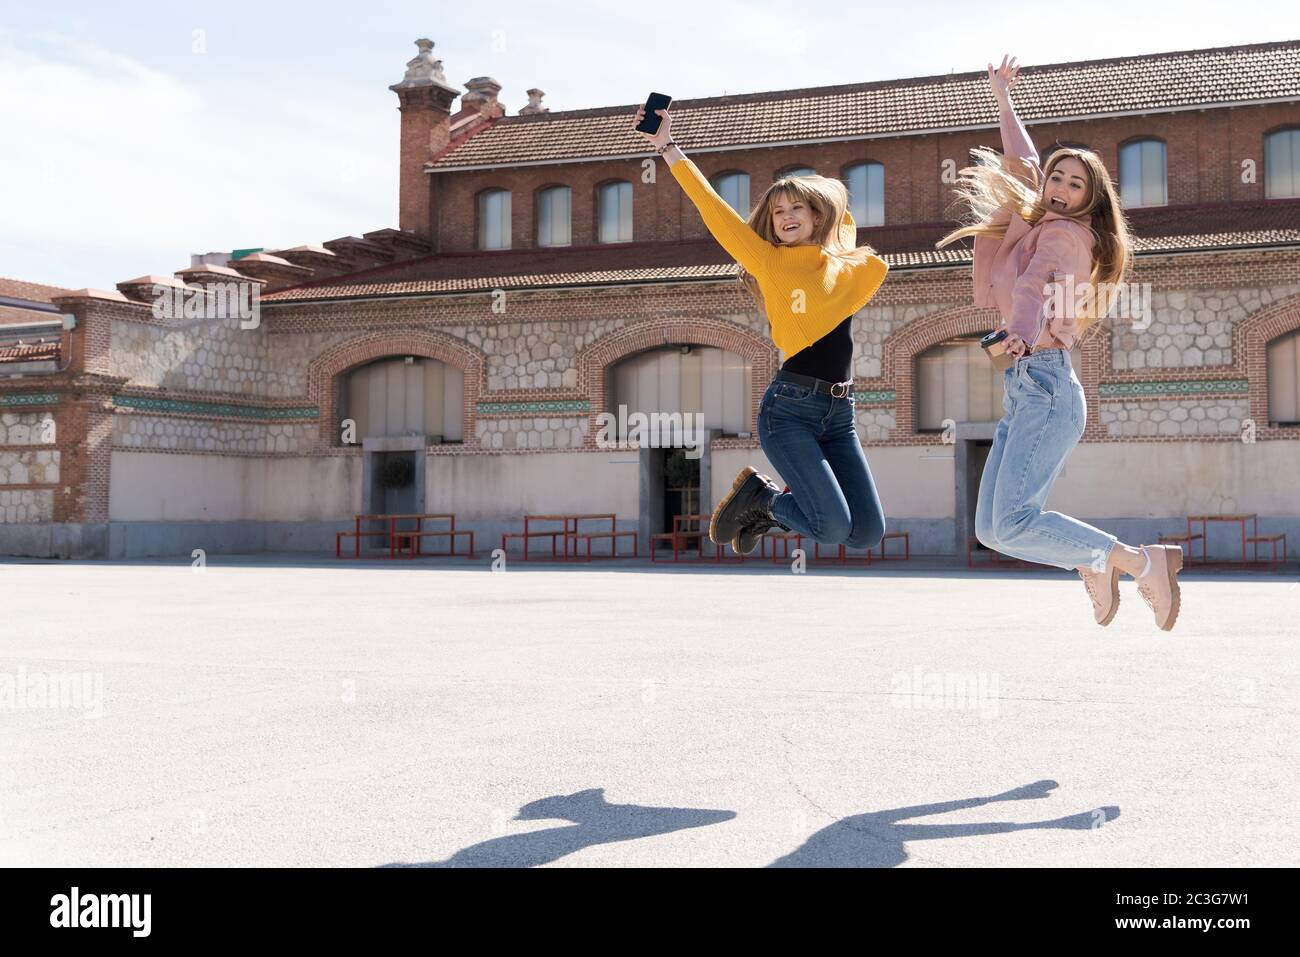 Deux jeunes filles caucasiennes attirantes sautent en haut et en bas souriant dans une place de rue. Image lumineuse avec lumière naturelle et espace pour le texte Banque D'Images